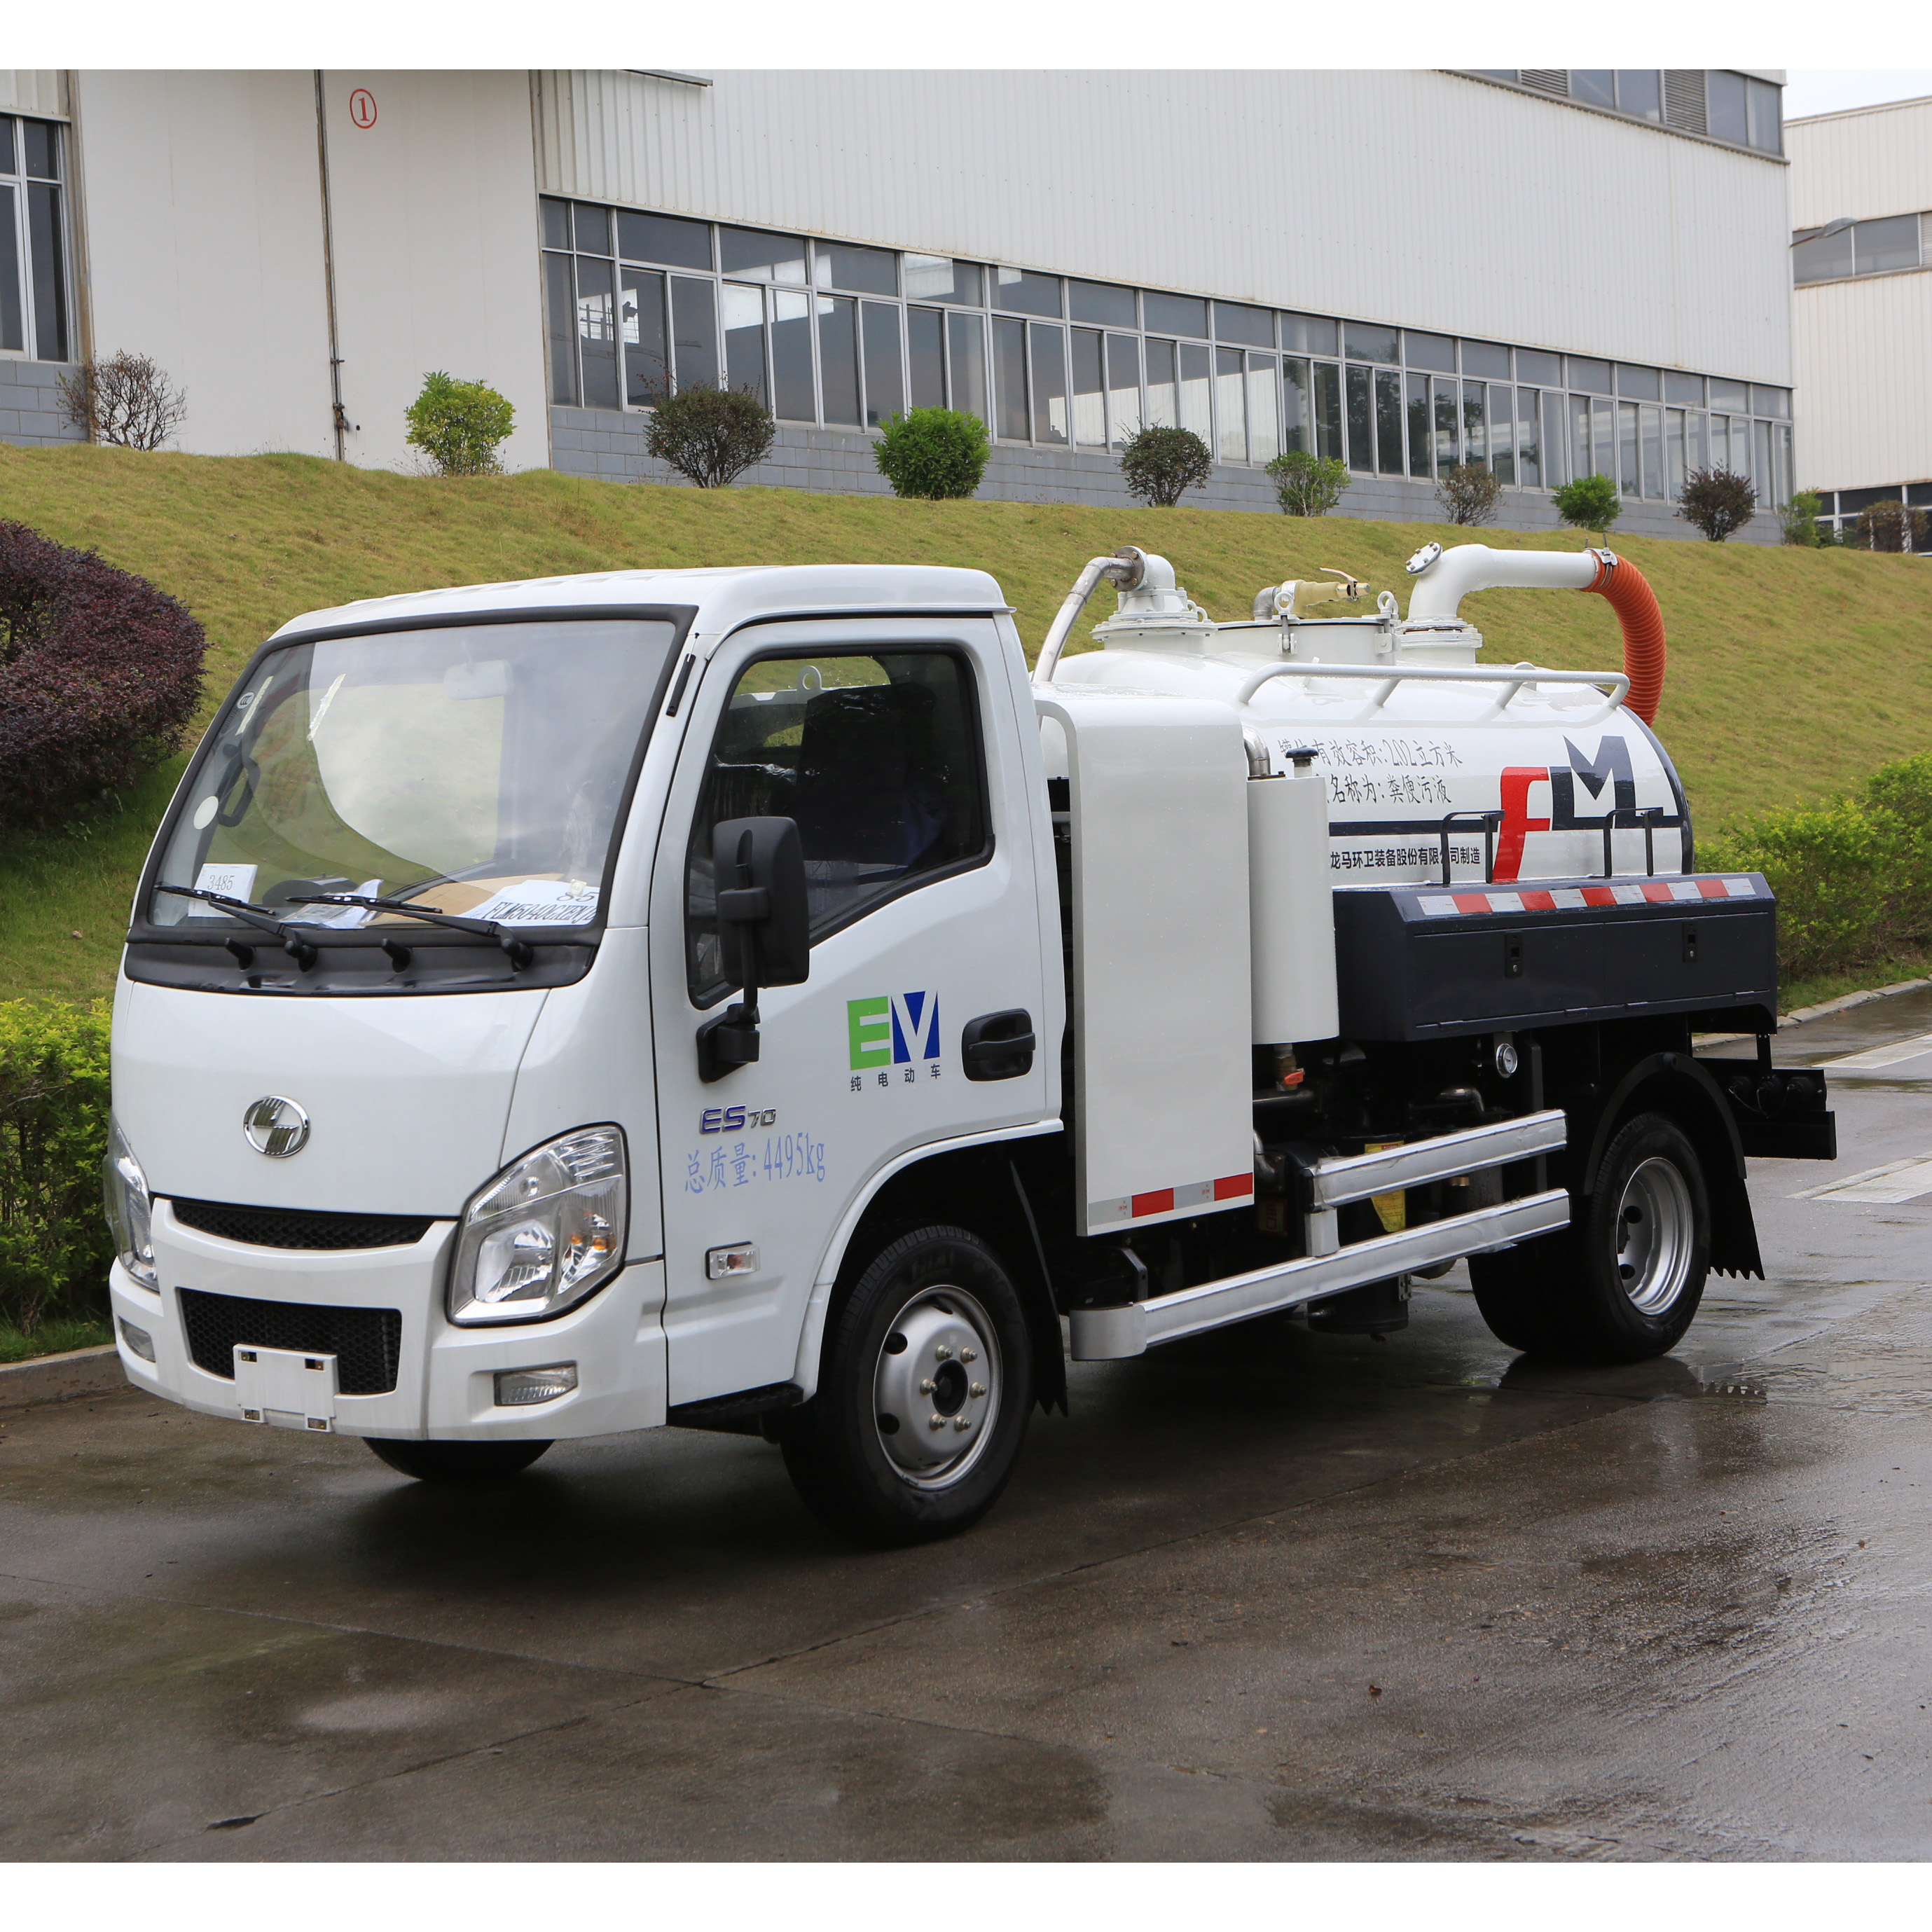 Configuración funcional y características del último camión de succión de aguas residuales eléctrico puro de FULONGMA